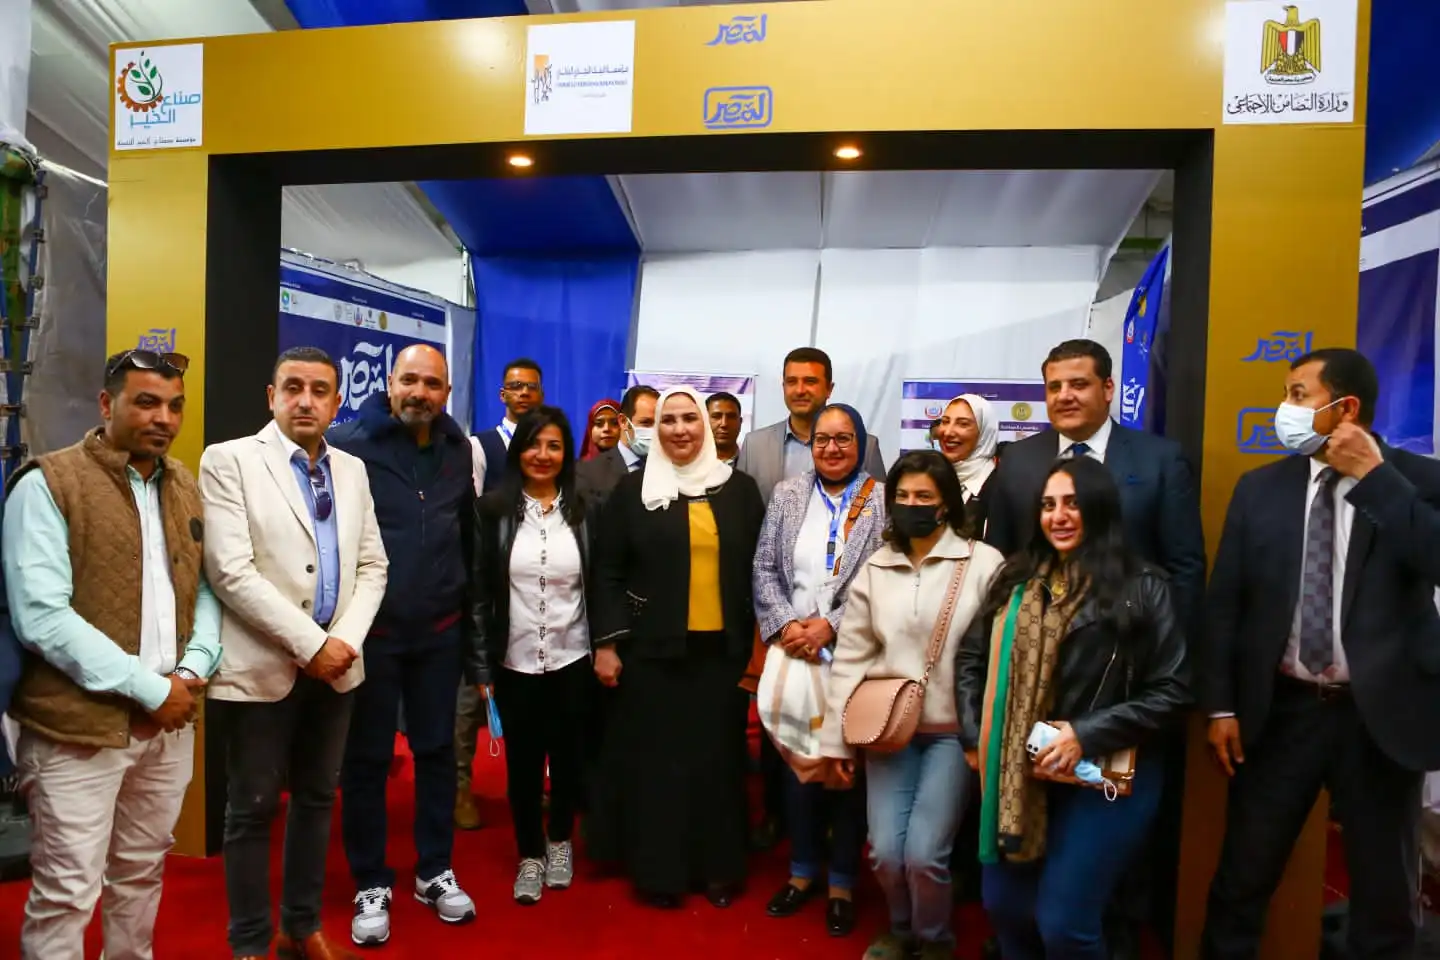 مؤسسة التجاري الدولي تطلق أولى برامجها القومية مبادرة “لمصر”